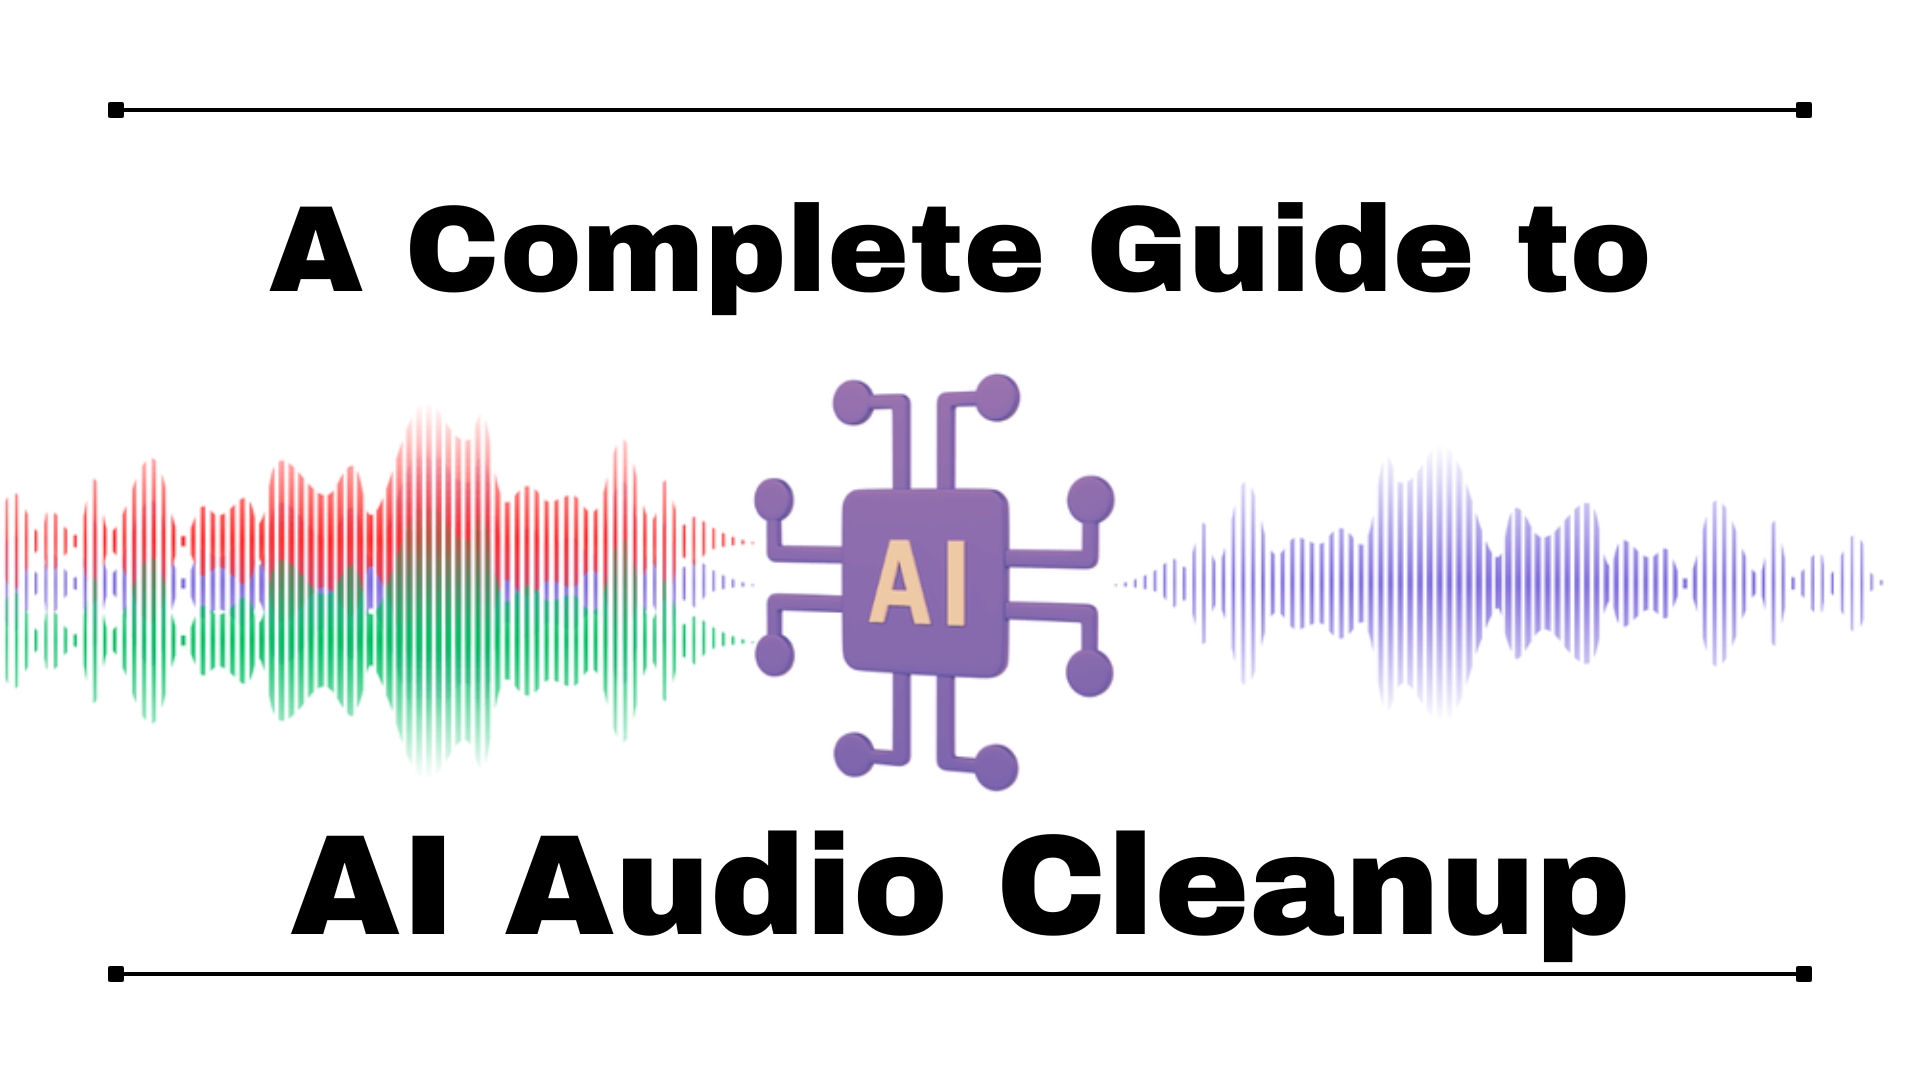 Improve Audio Clarity using AI Audio Cleanup